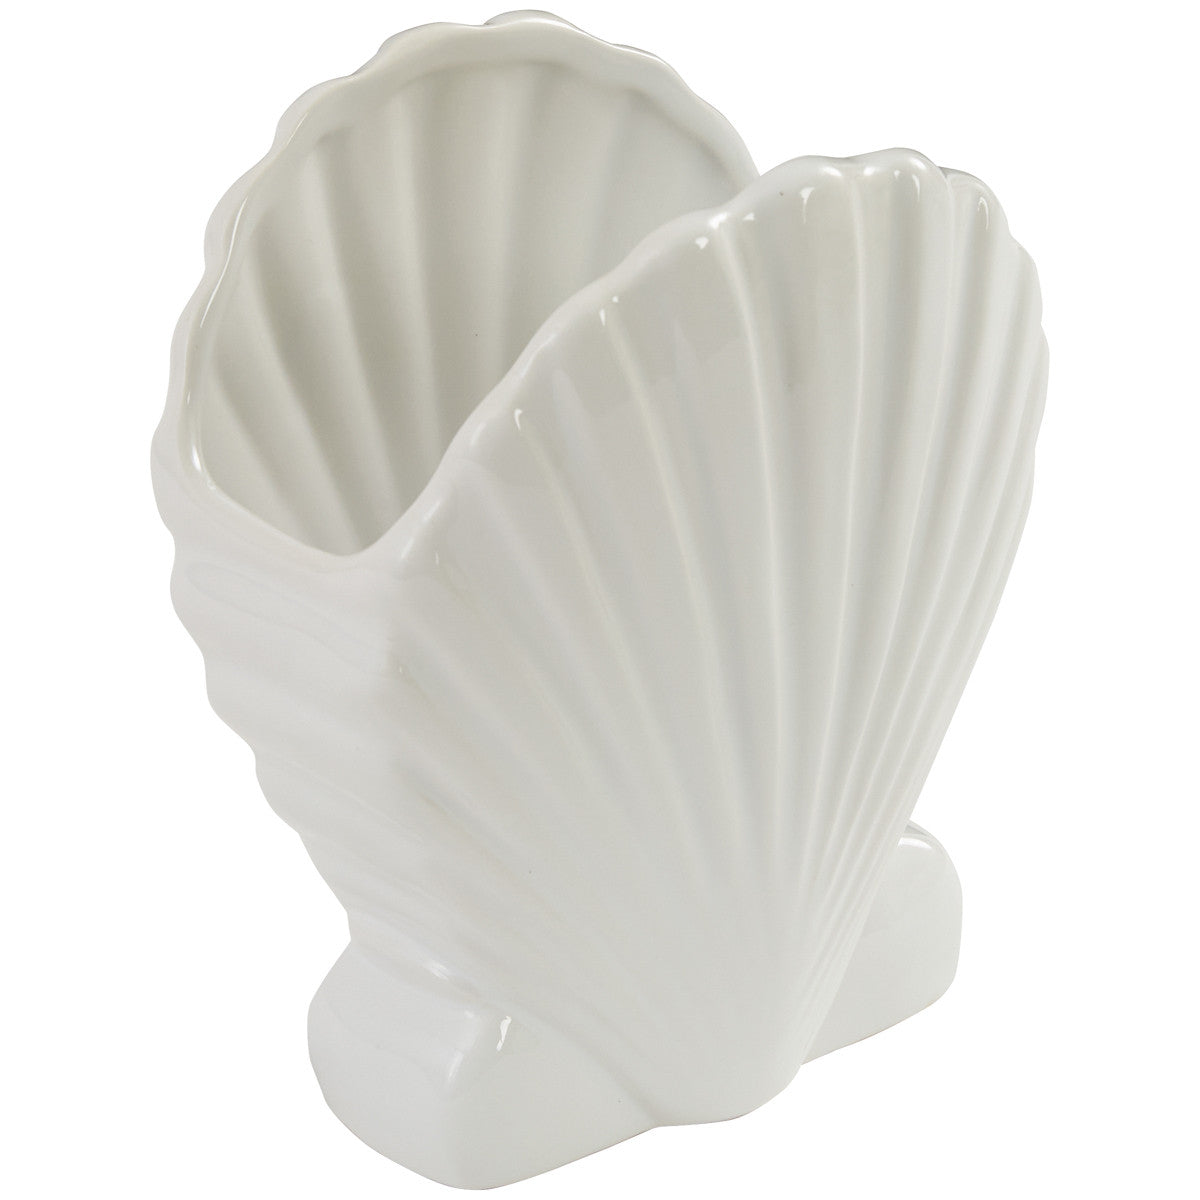 Seashell Utensil Holder - Set of 2 Park Designs